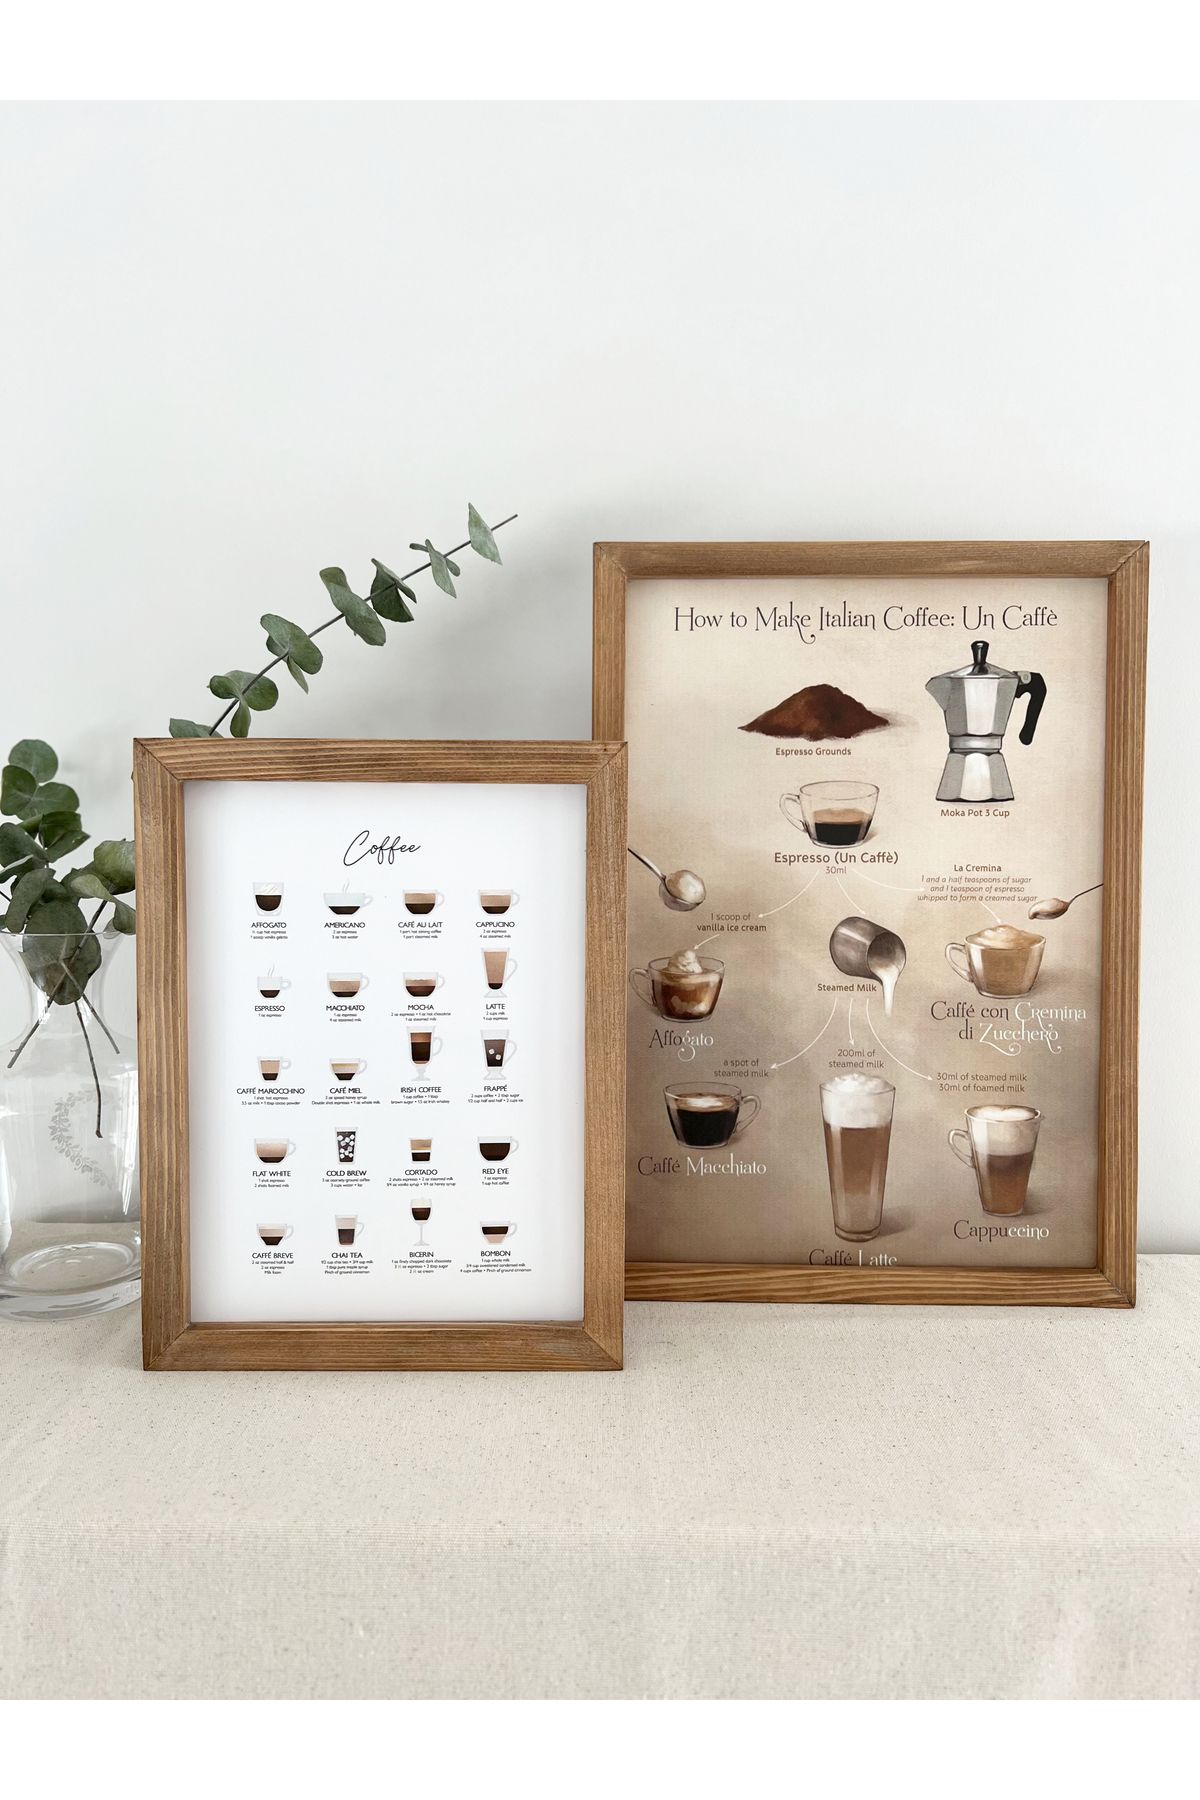 Puu Design Kahve Köşesi İtalyan Kahve Nasıl Yapılır How to Make Italian Coffee, Coffee Guide Ahşap Tablo Seti